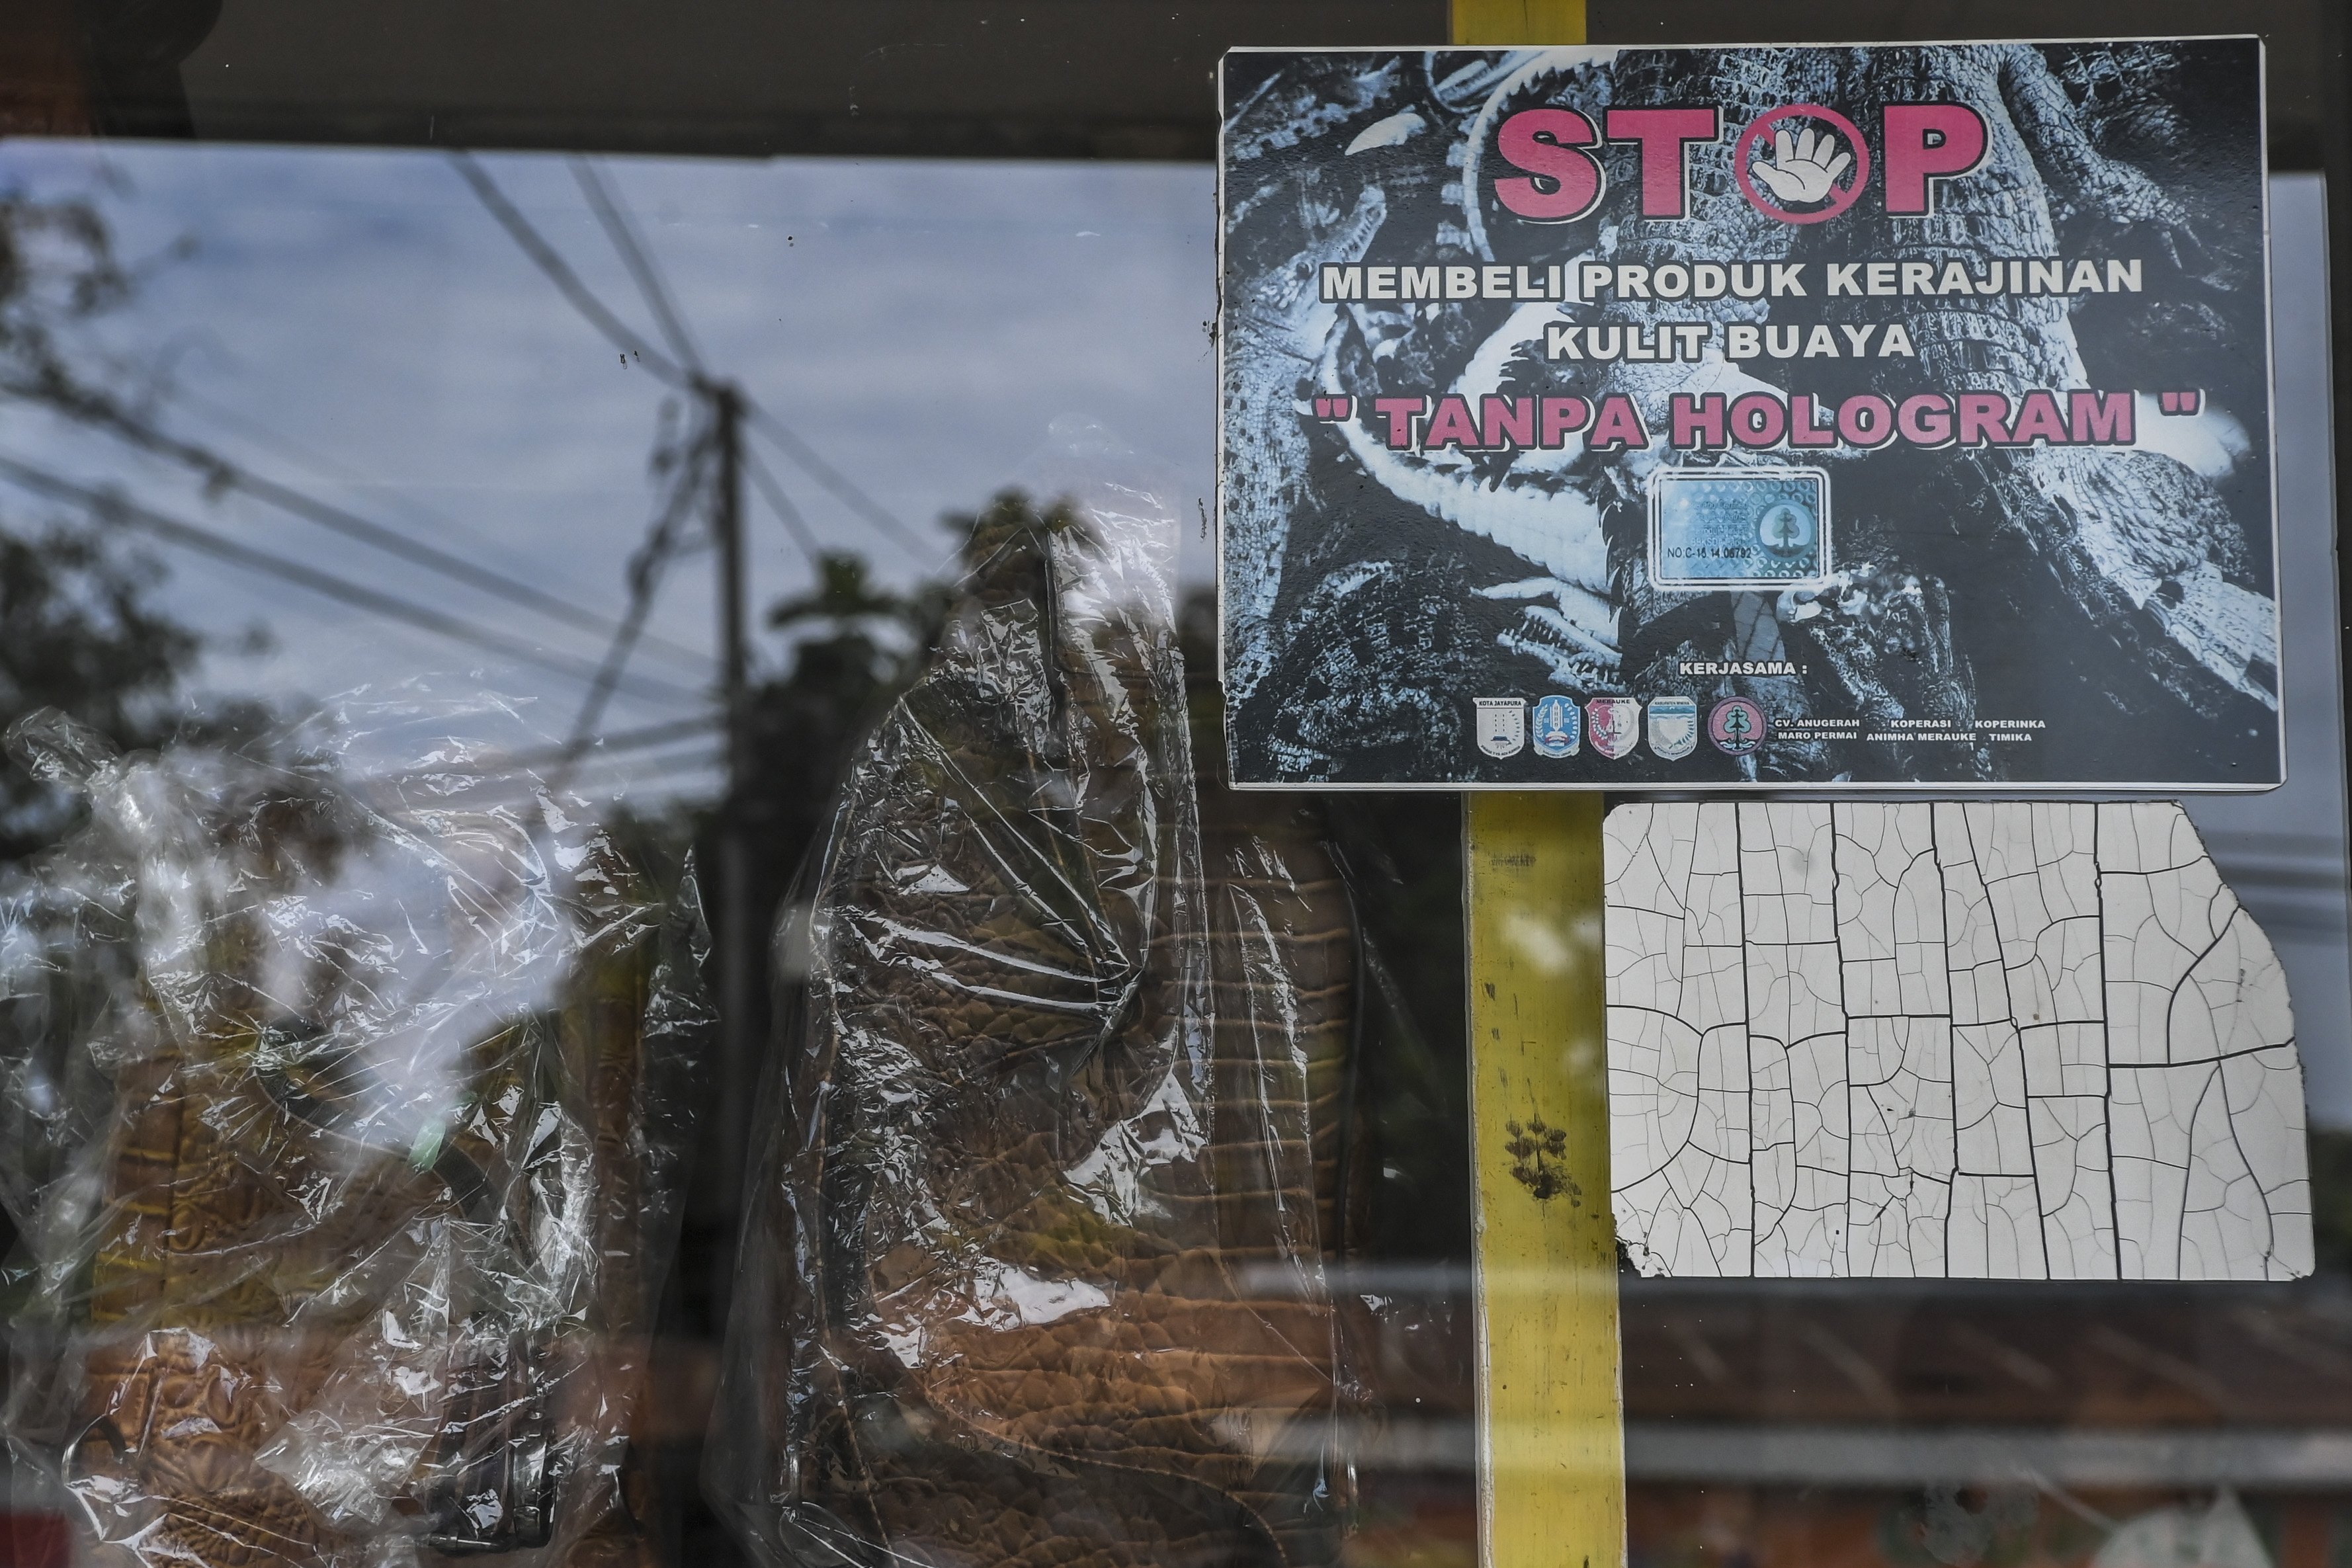 Sebuah stiker berisi peringatan untuk tidak membeli produk tak berhologram terpasang di kaca toko yang menjual kerajinan tangan kulit buaya di Merauke, Papua.